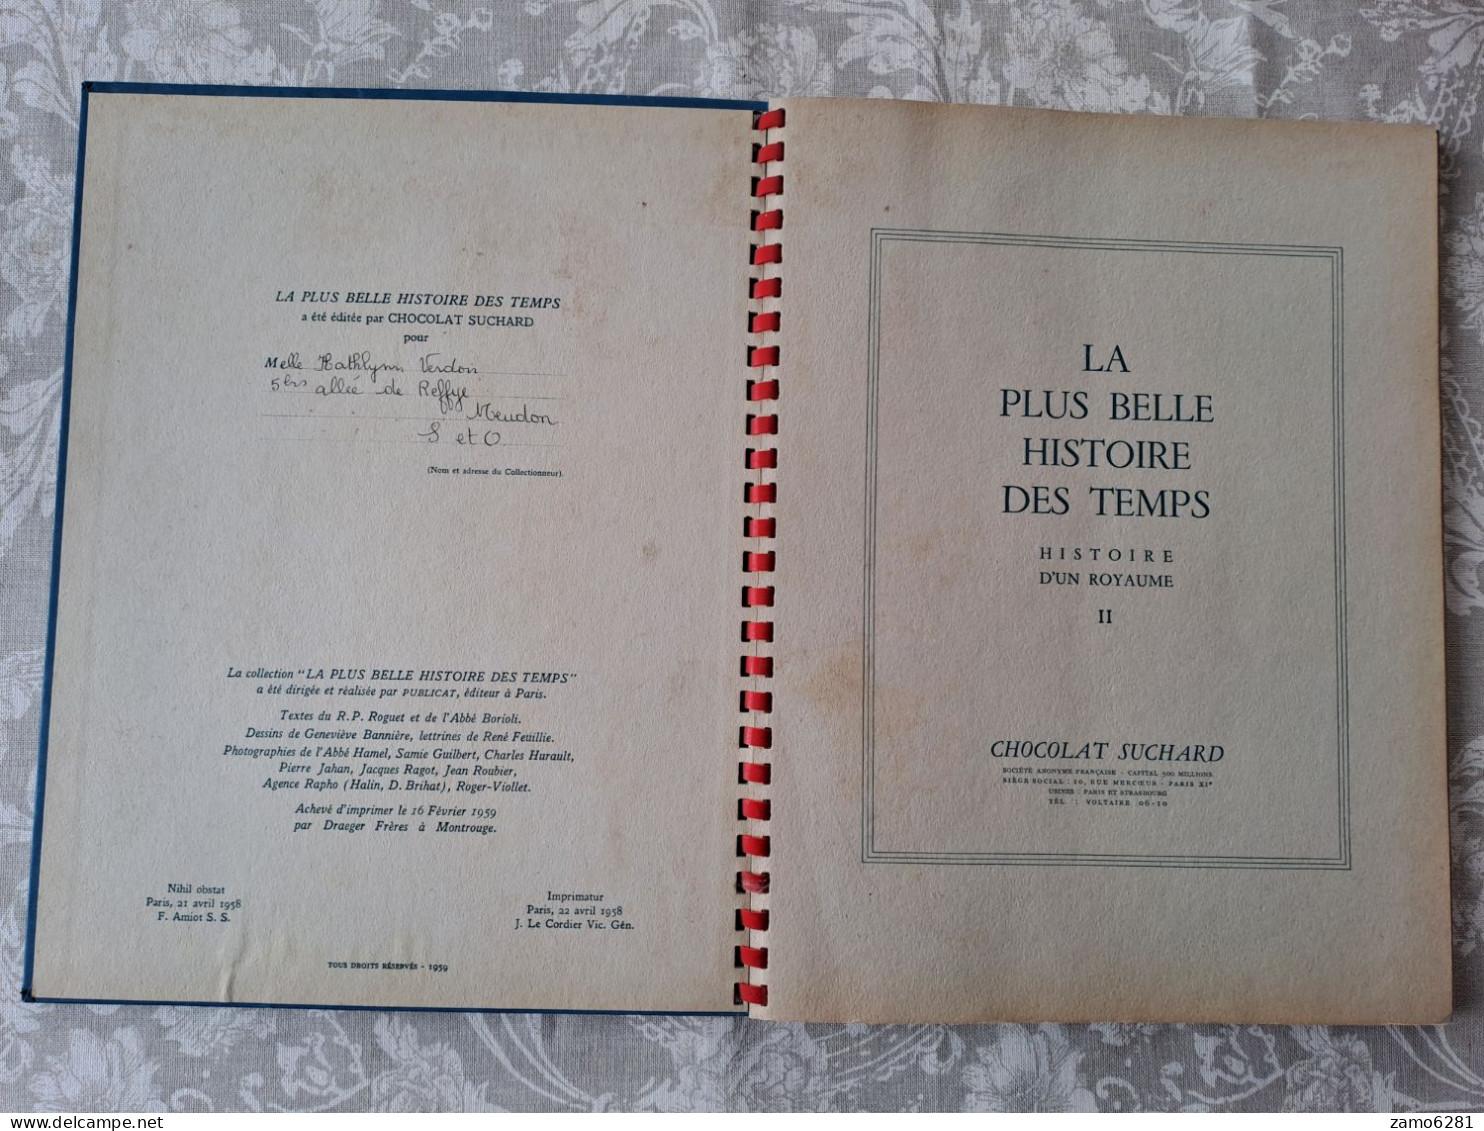 Suchard - La Plus Belle Histoire Des Temps - Tome 2 1958 - Chocolate